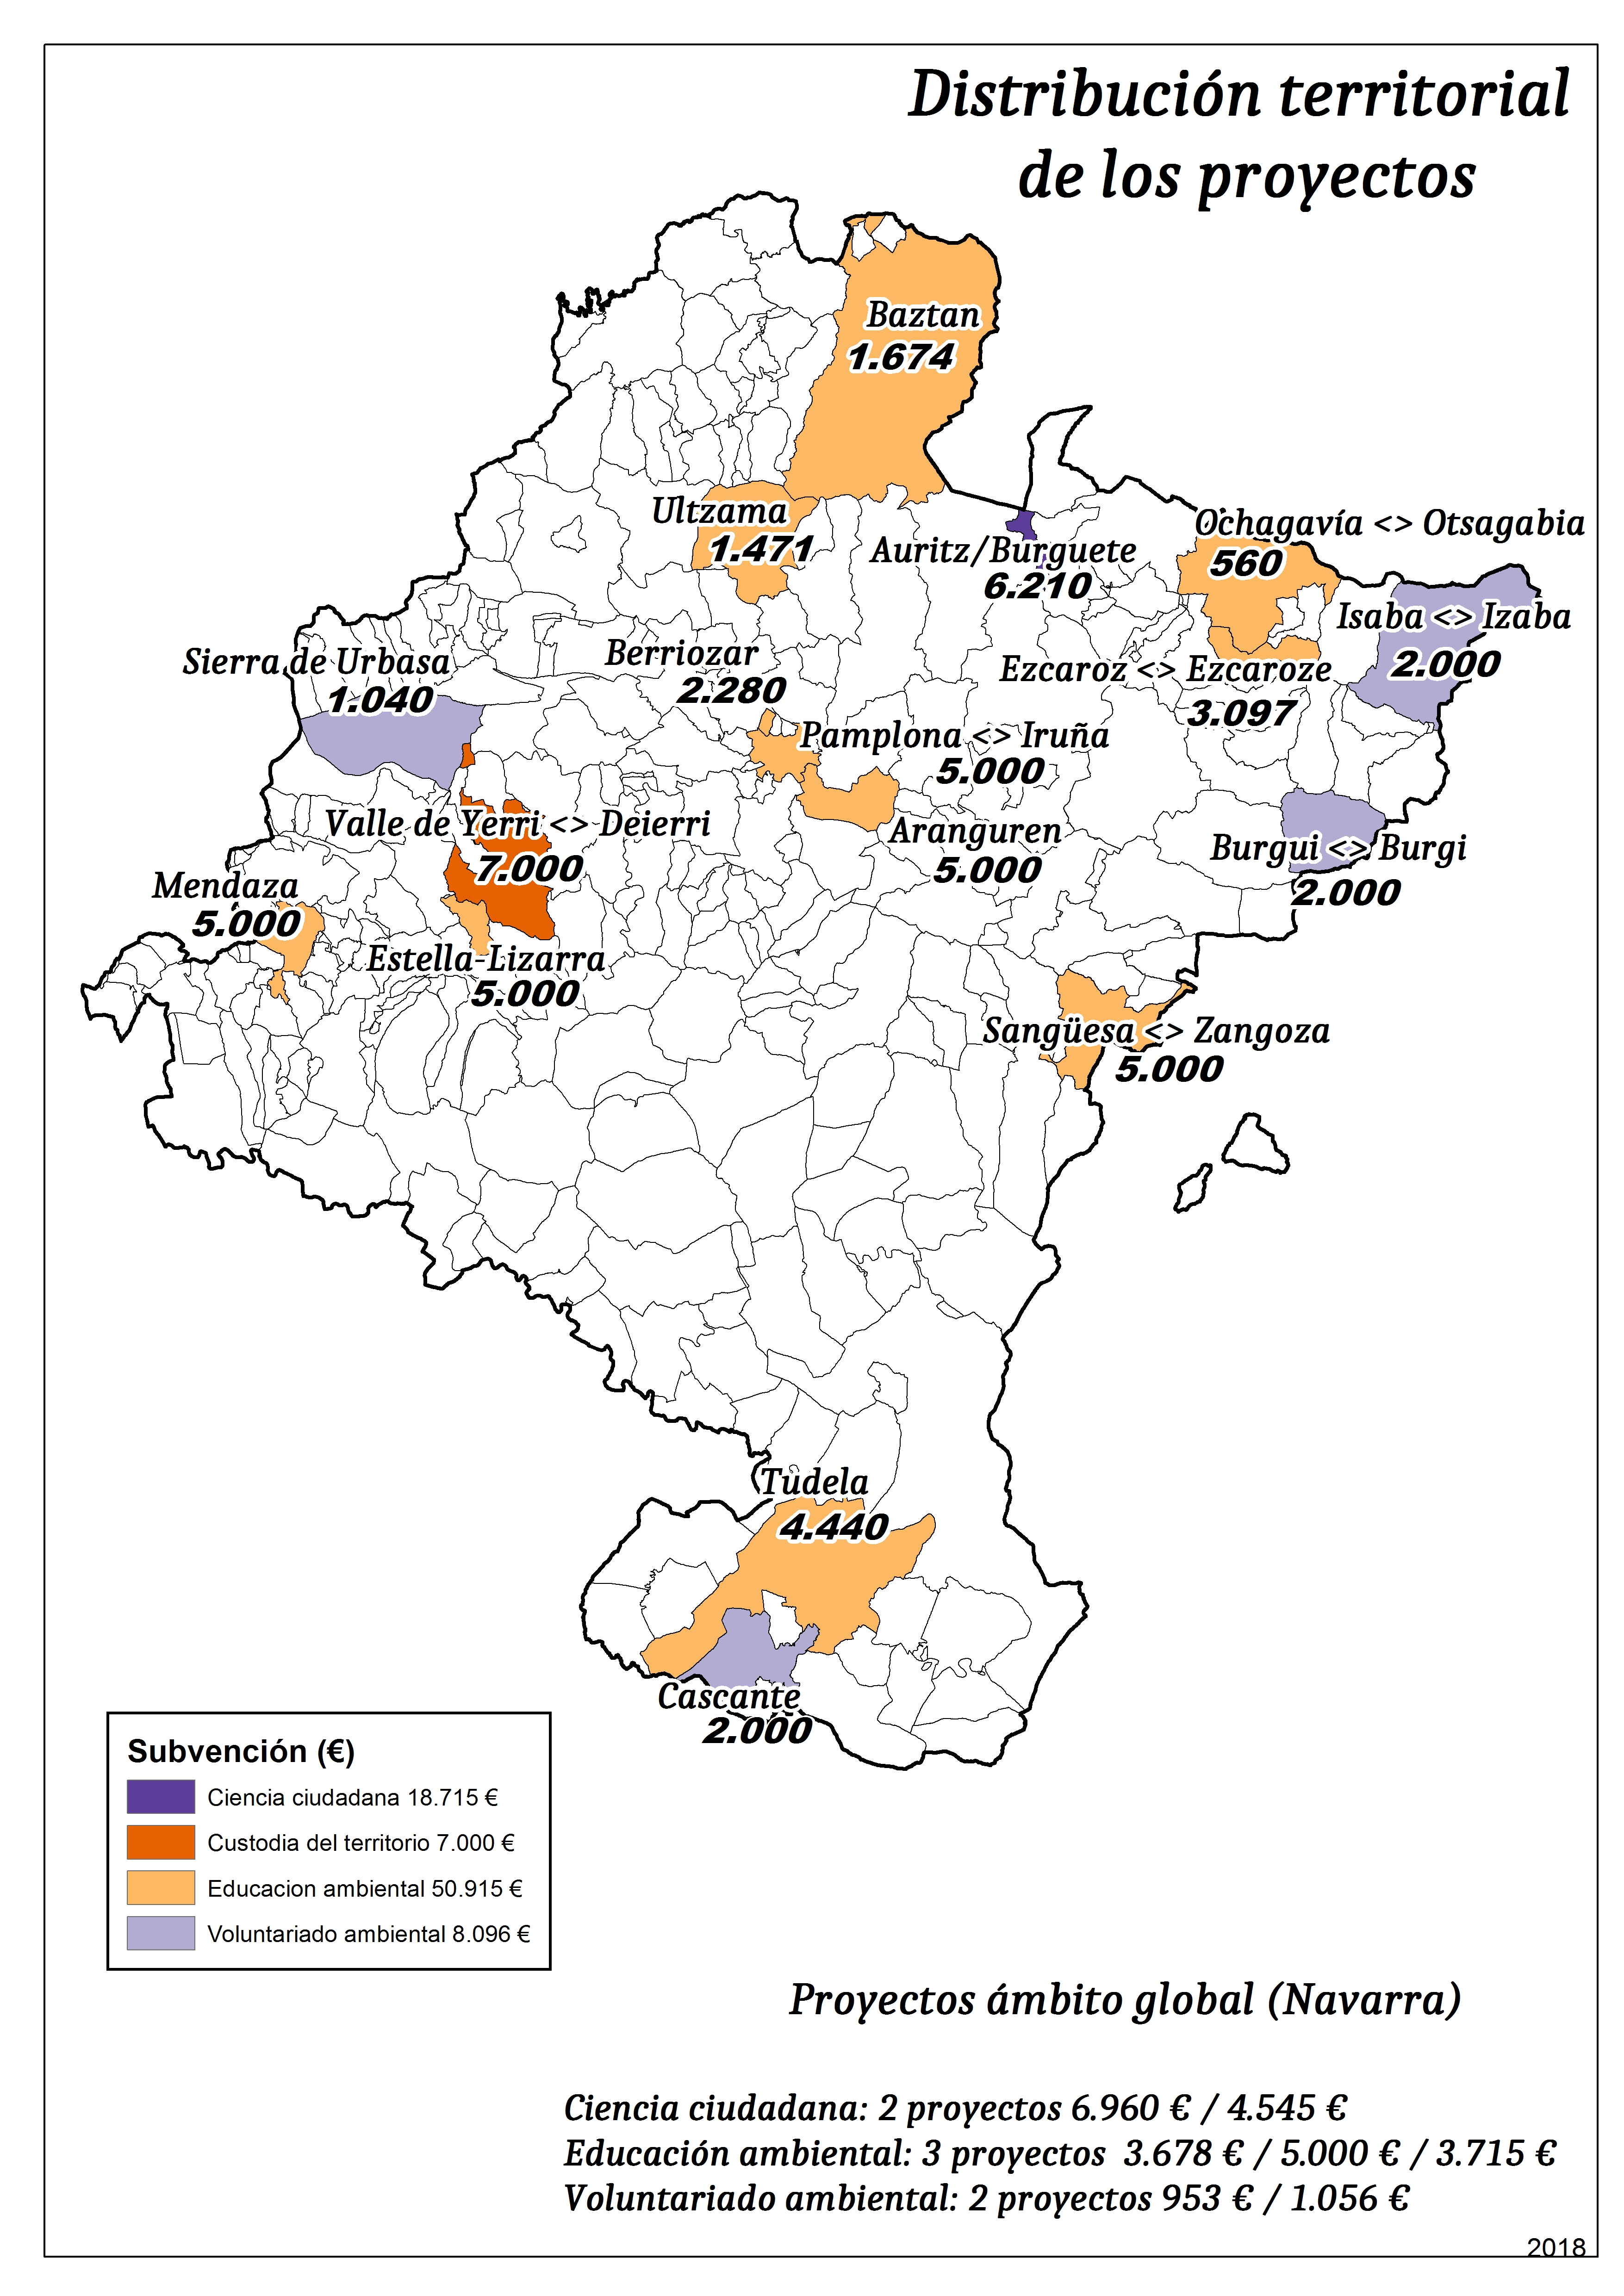 Mapa con la distribución territorial de los proyectos de voluntariado ambiental